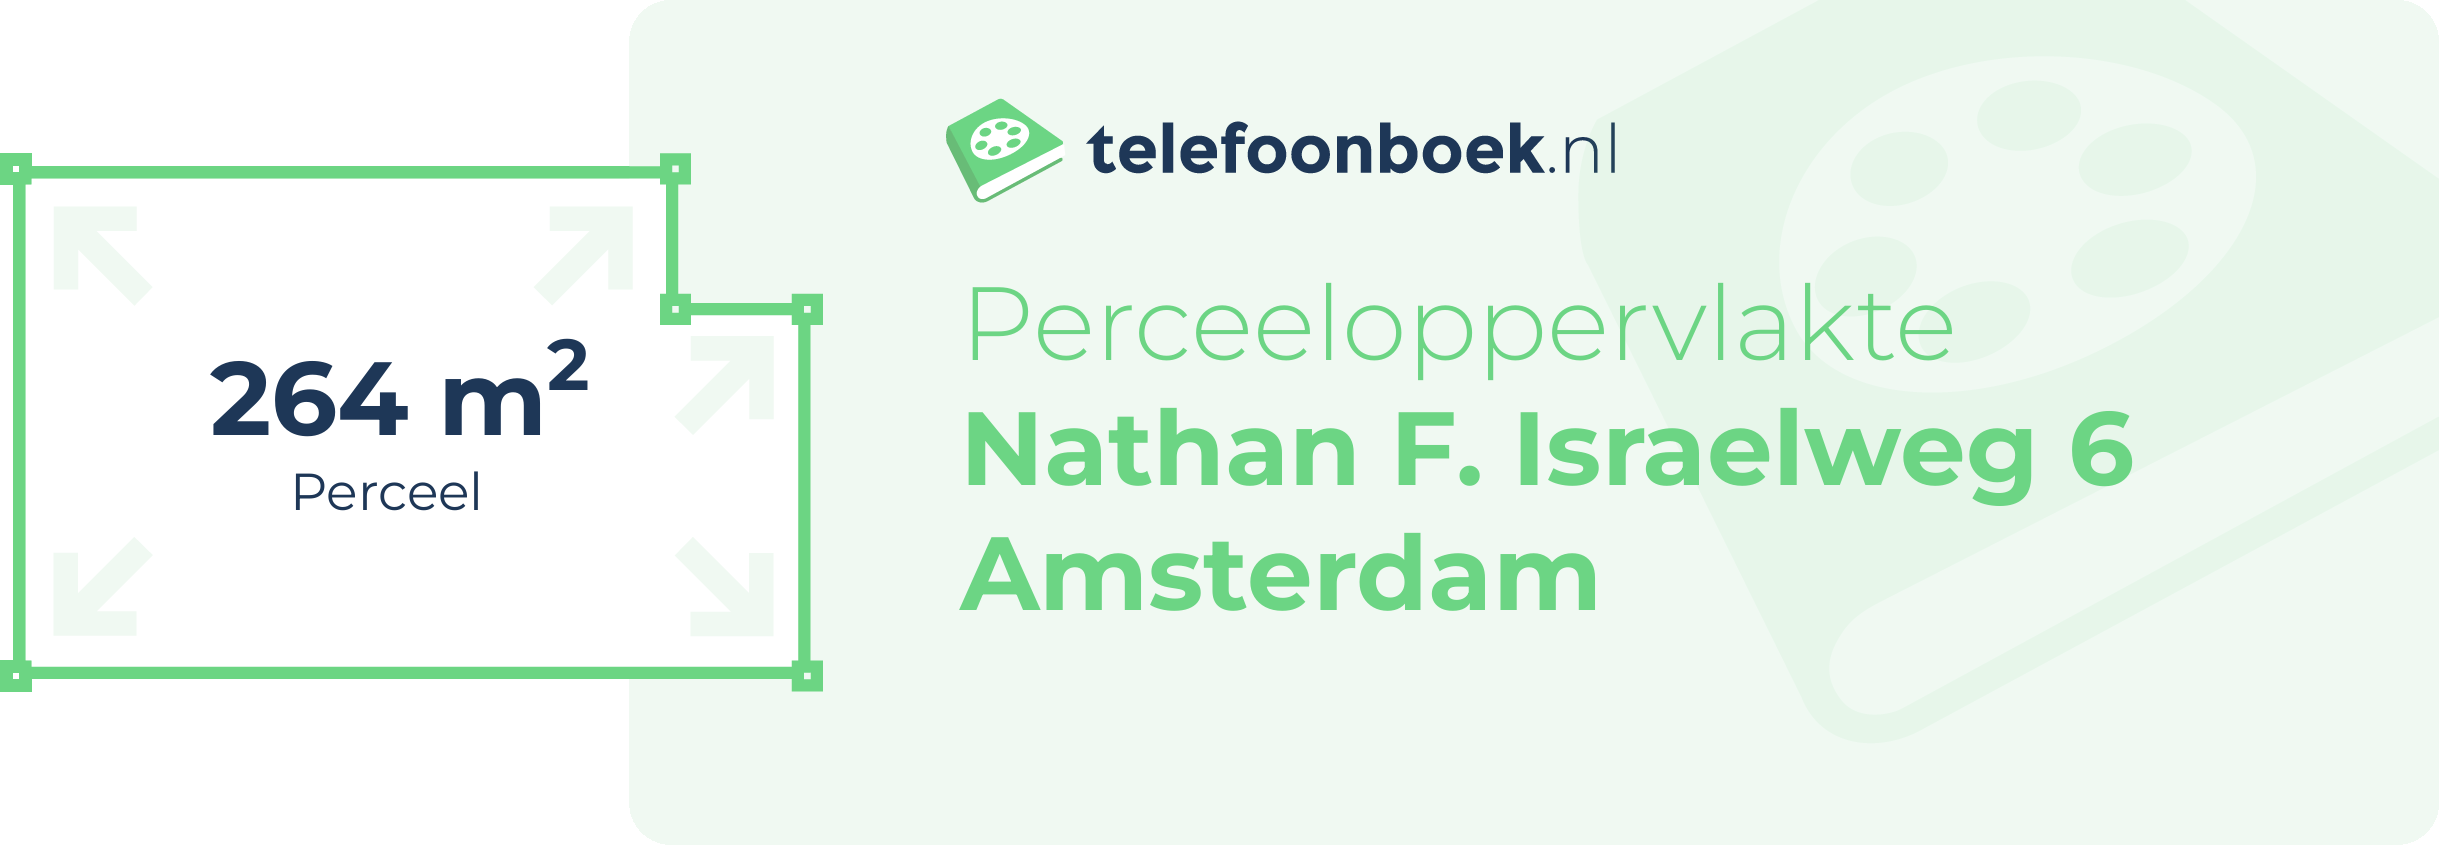 Perceeloppervlakte Nathan F. Israelweg 6 Amsterdam